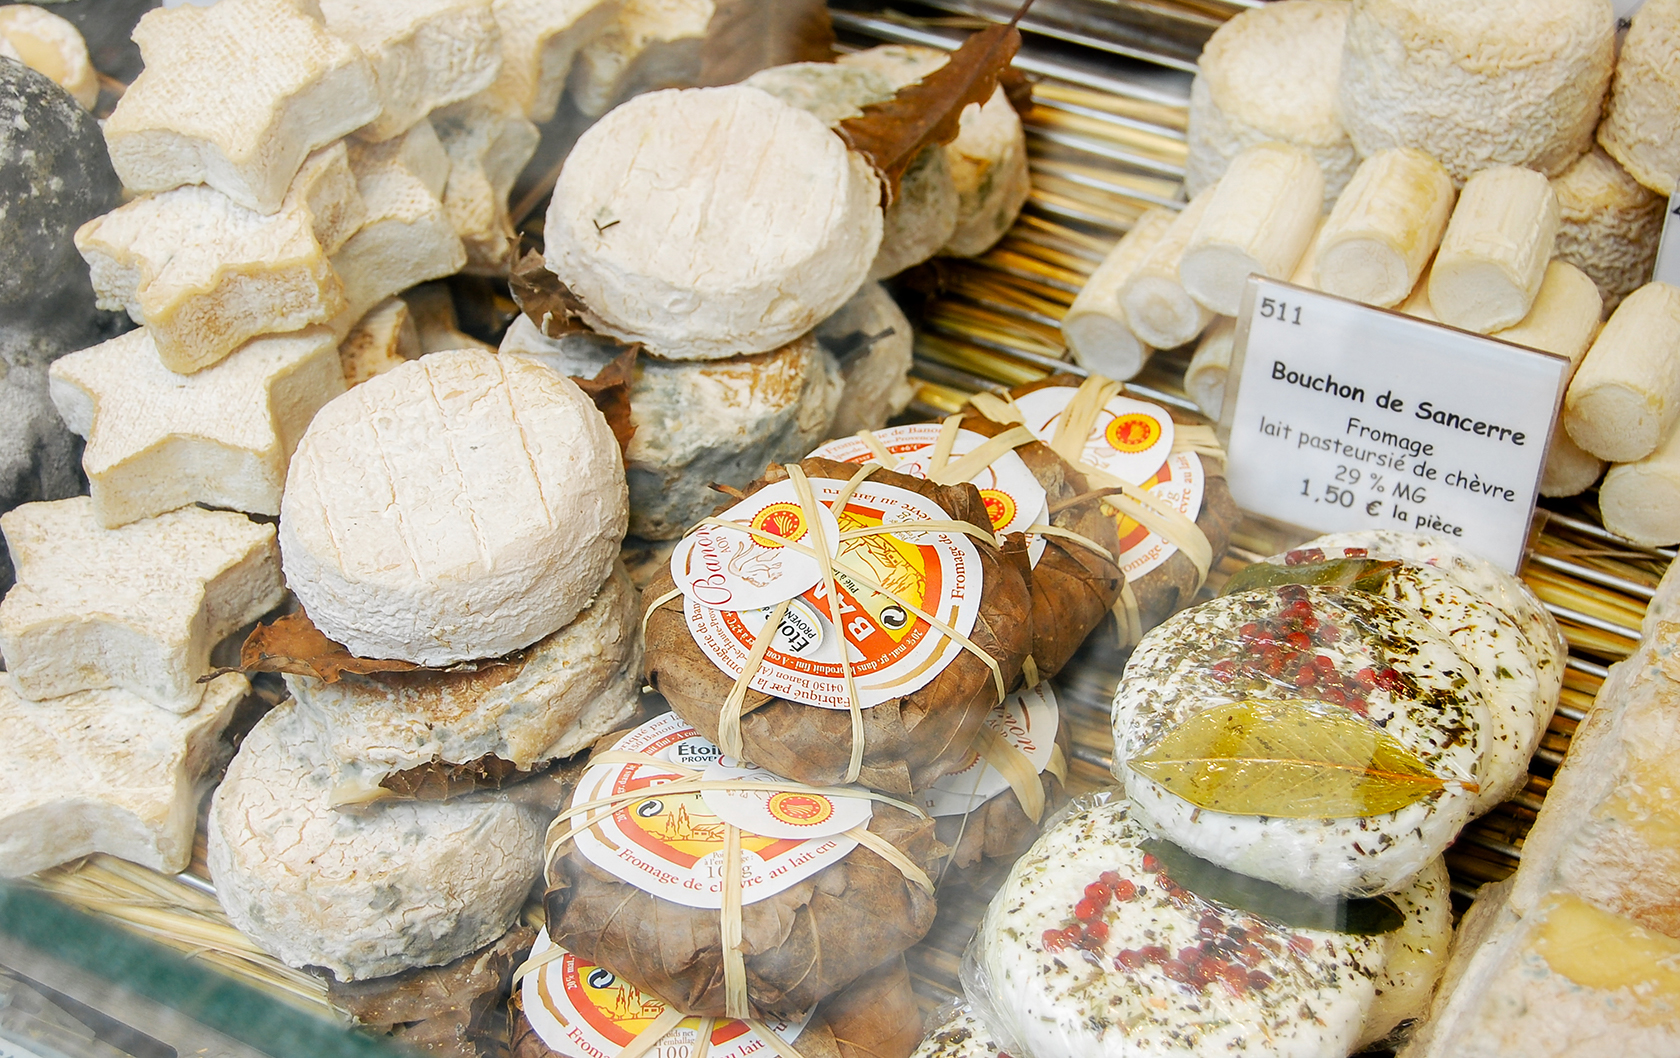 rue Cler Paris cheese shopping